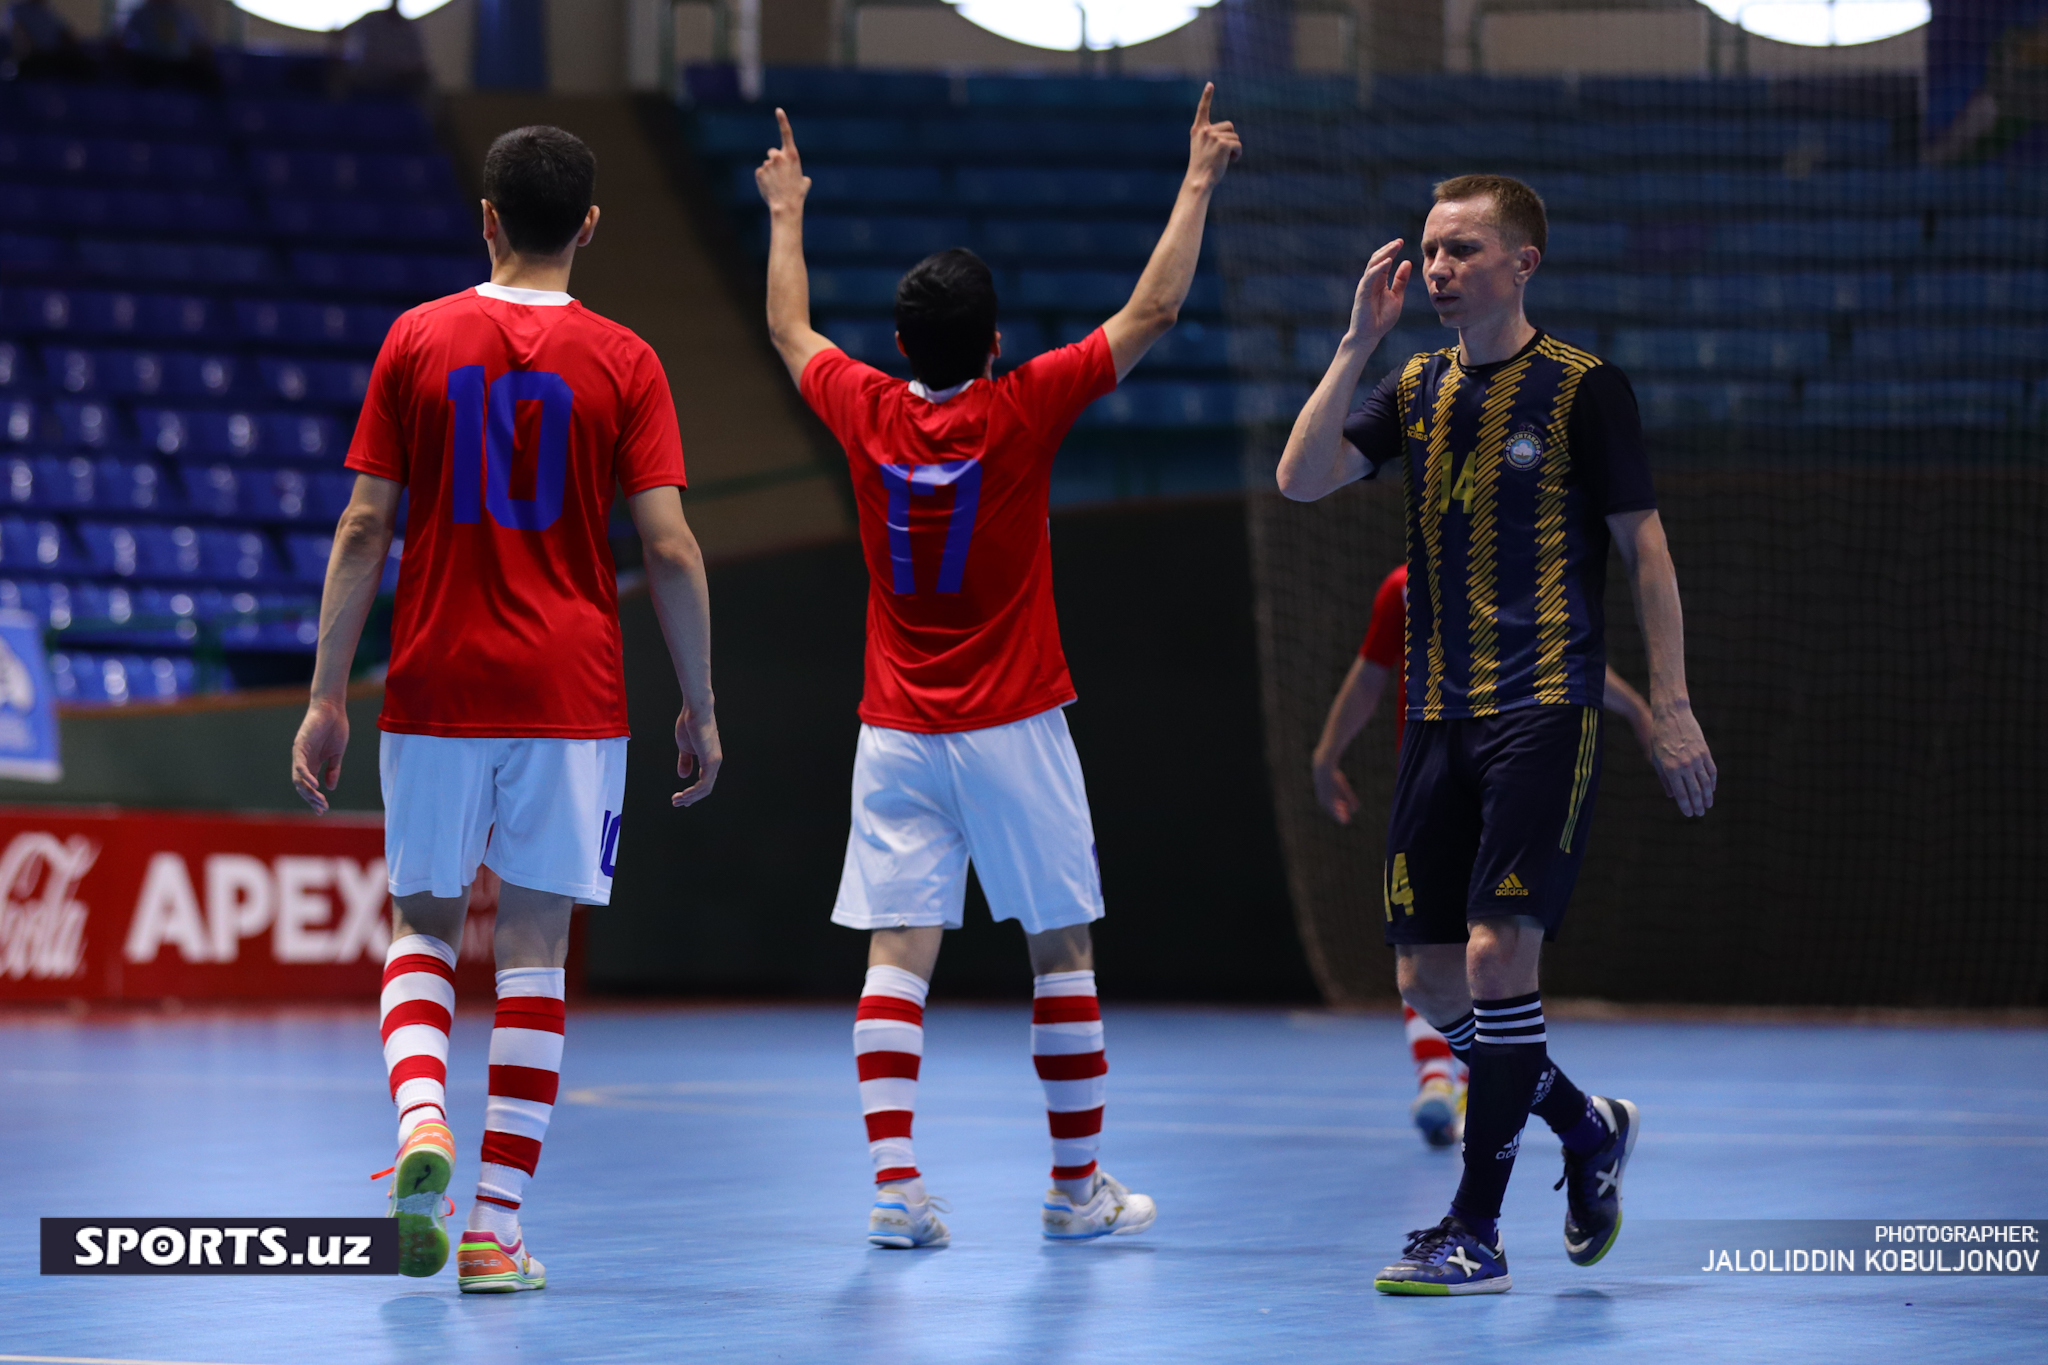 Futsal. Paxtakor - Jizzax Kenteks, Cup final 05/06/2022